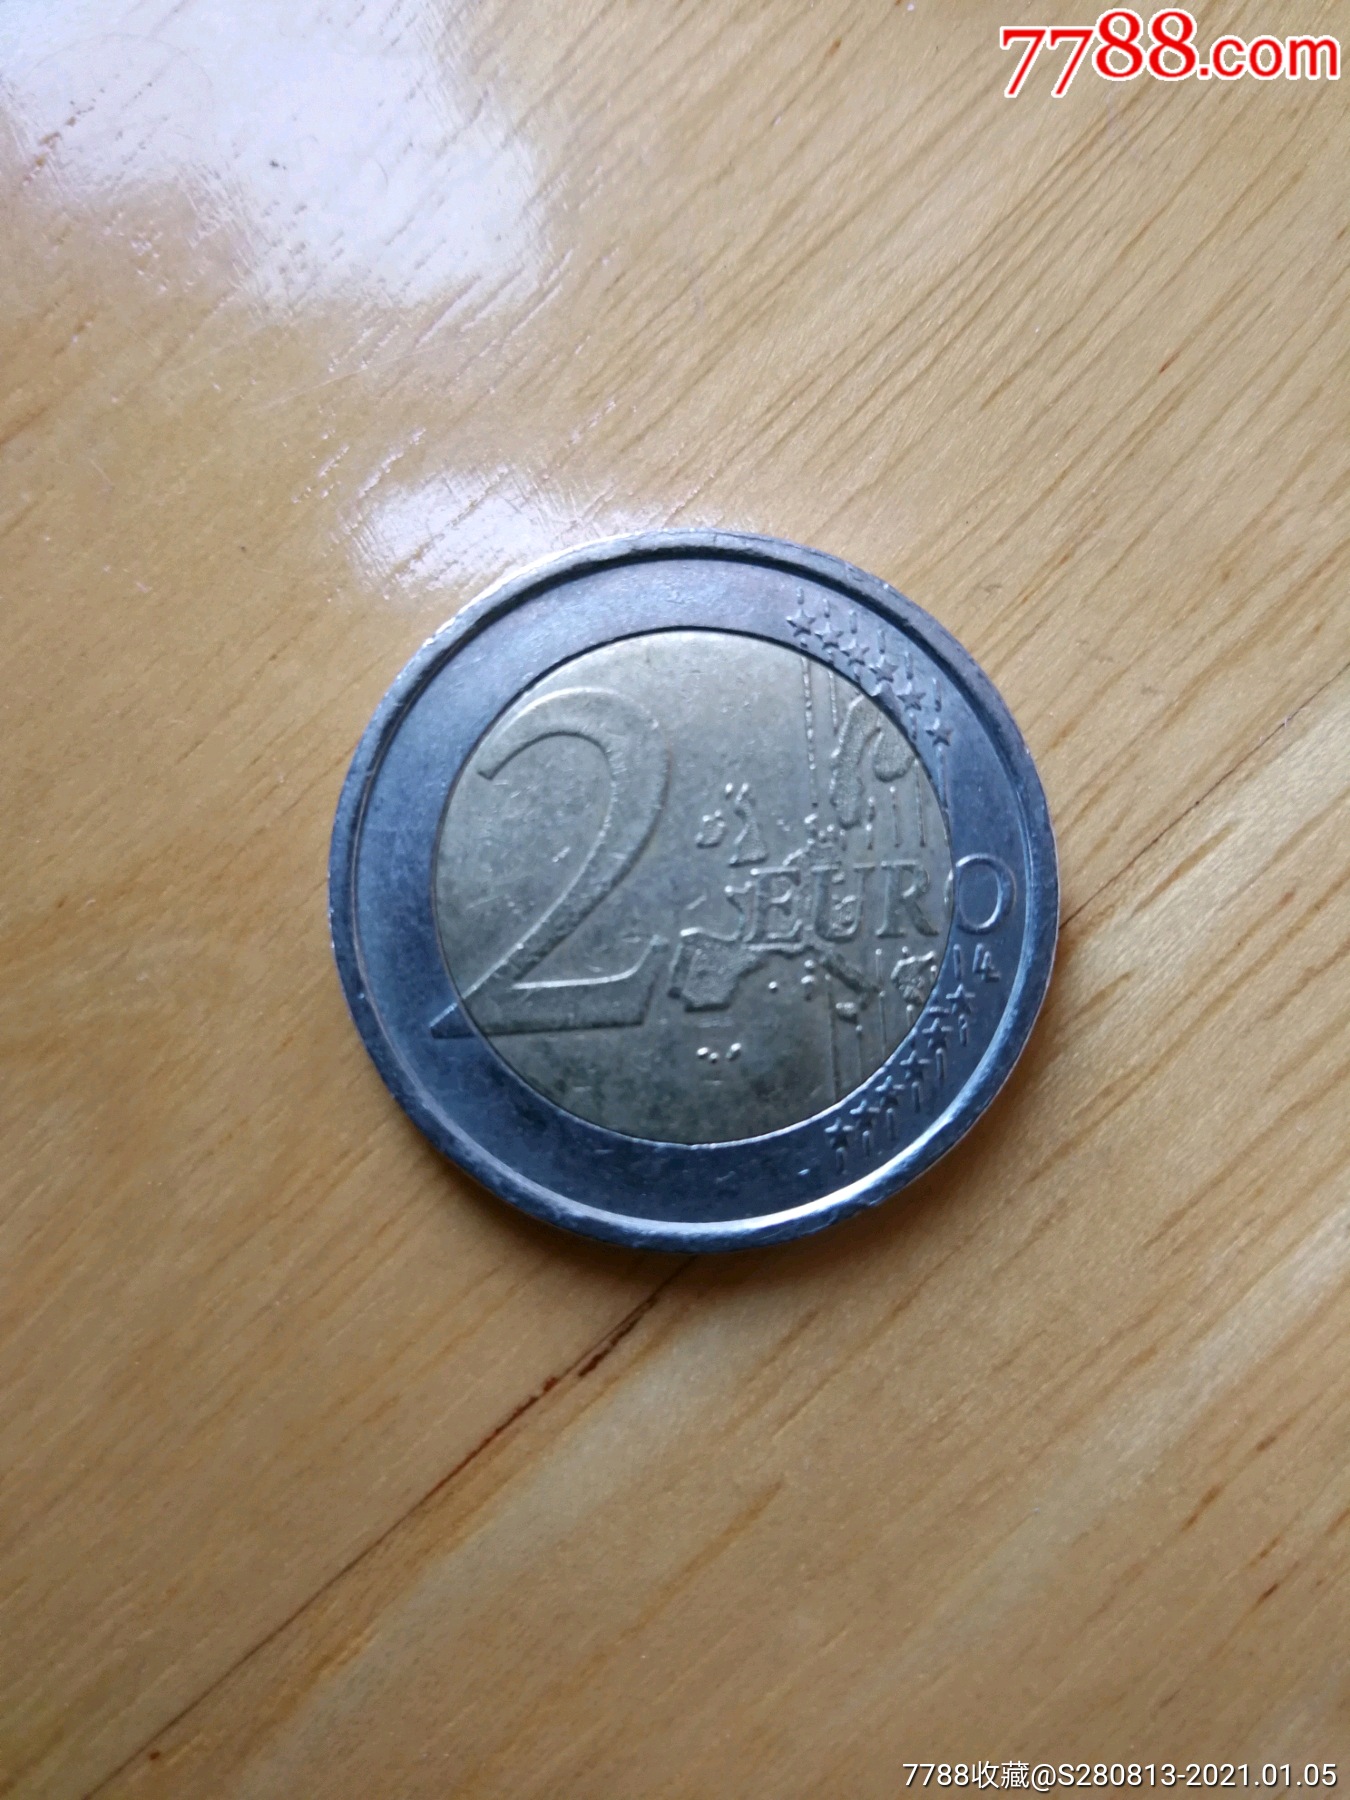 2欧元纪念币图片大全图片